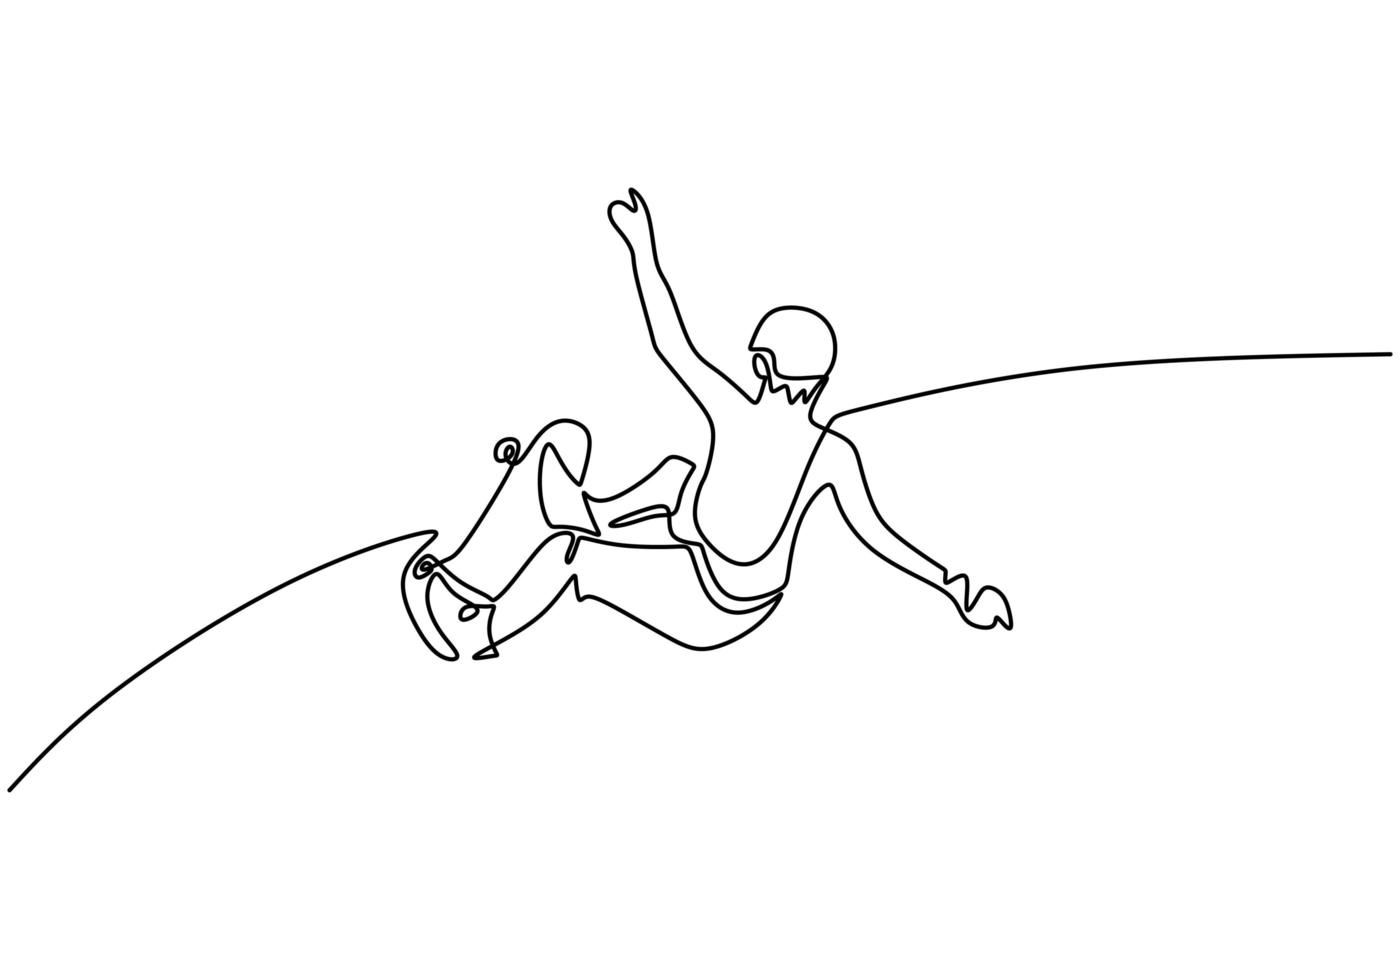 Desenho de linha contínuo de homem jogando skate jogador de jogo